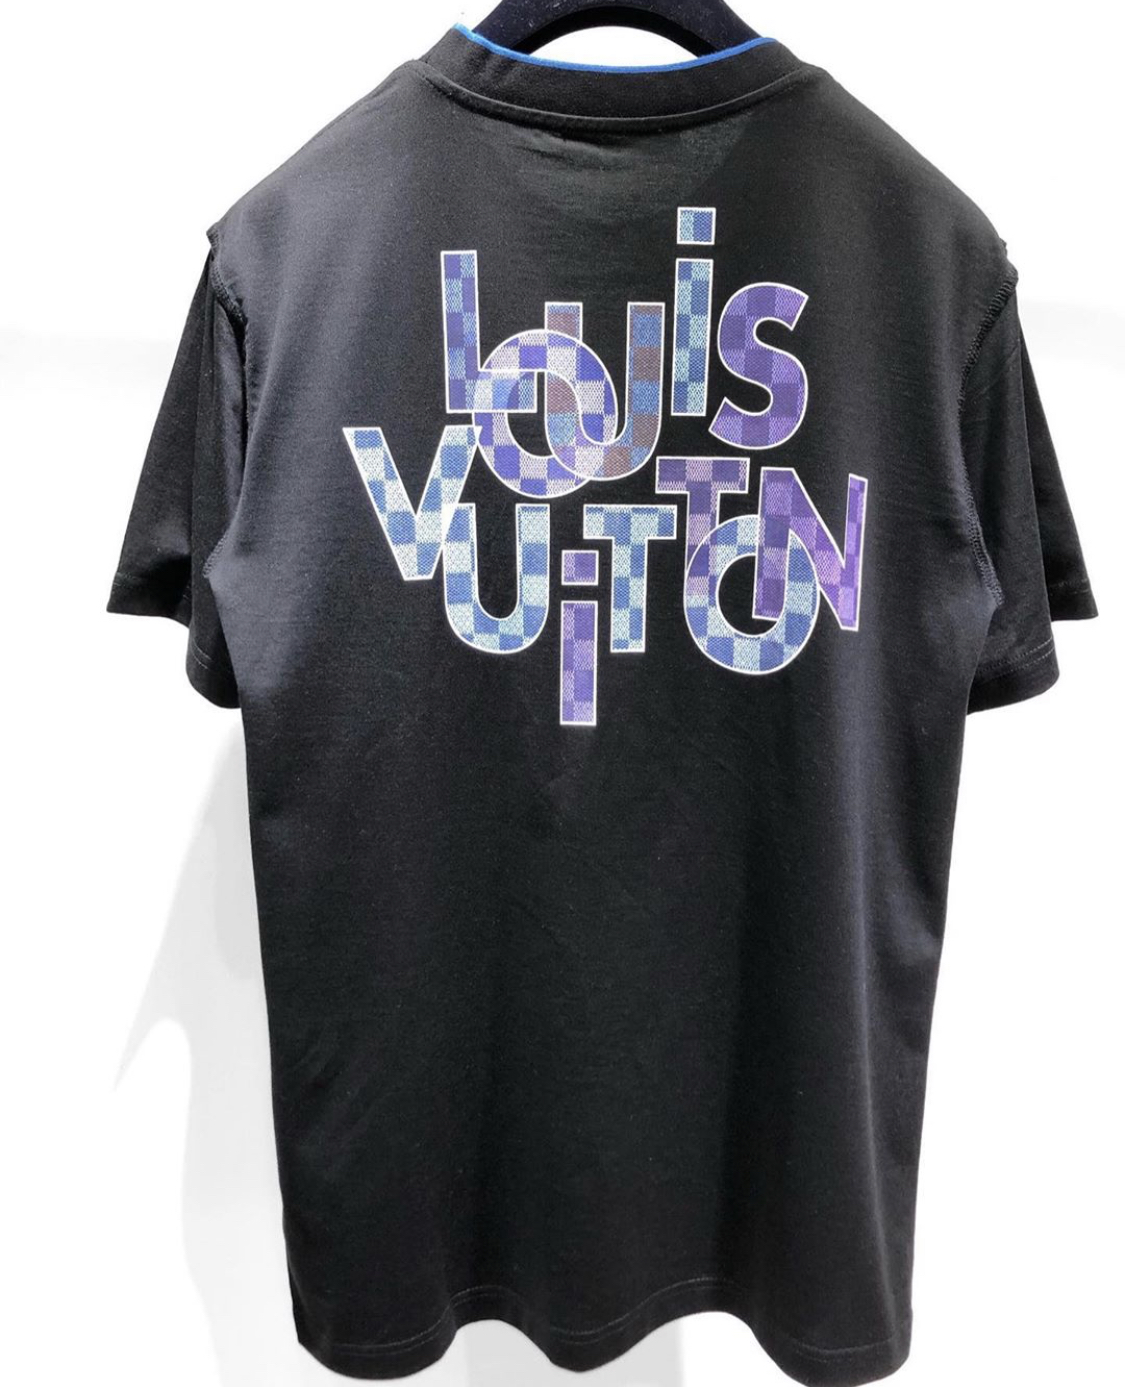 Vuitton Paris T-Shirt 1ABCFP, White, L